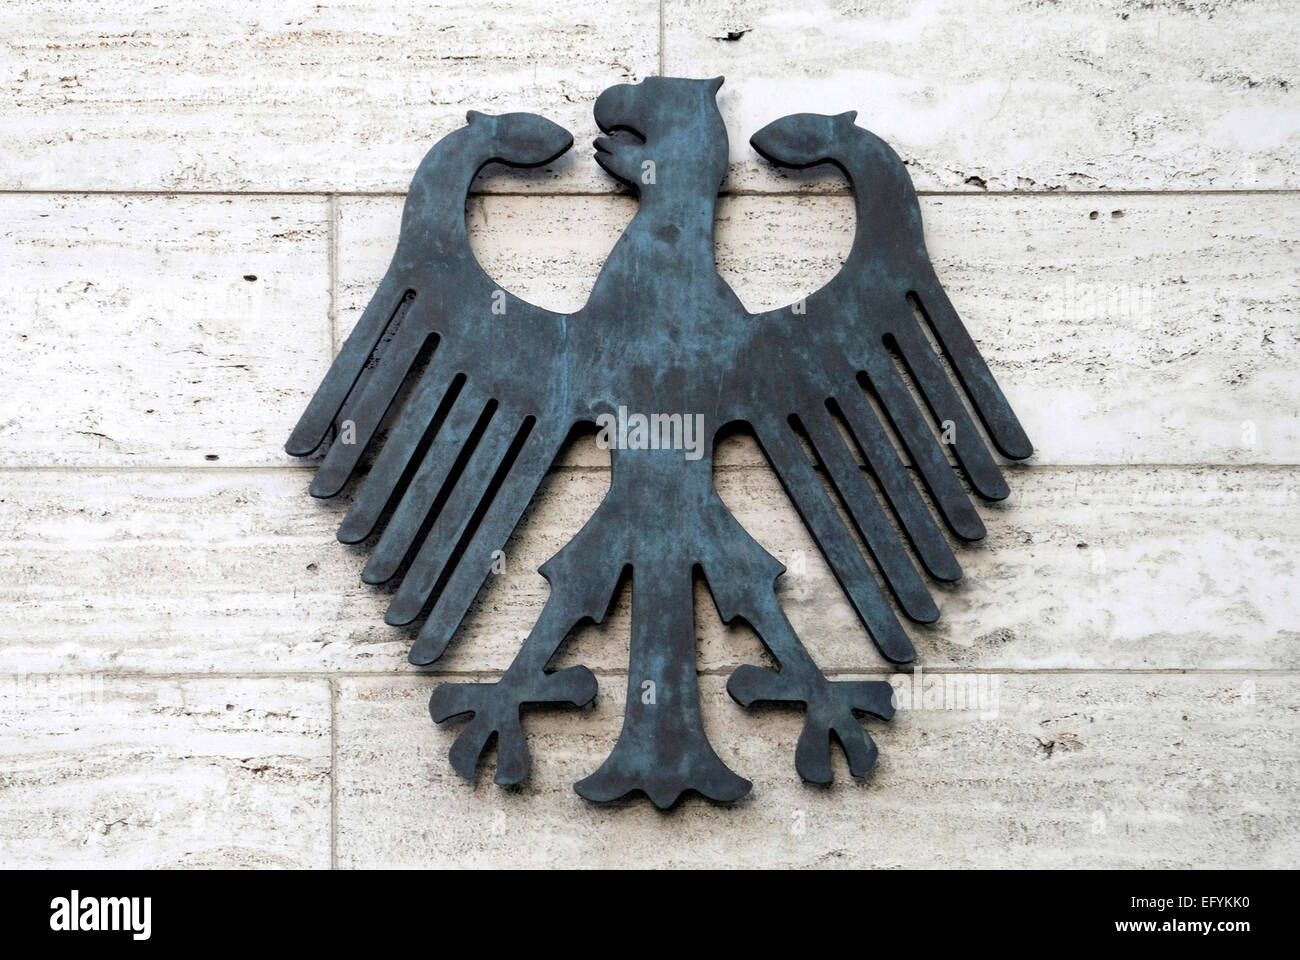 Föderation Adler beim Empfang des Auswärtigen Amtes der Bundesrepublik Deutschland am Werderschen Markt in Berlin. Stockfoto